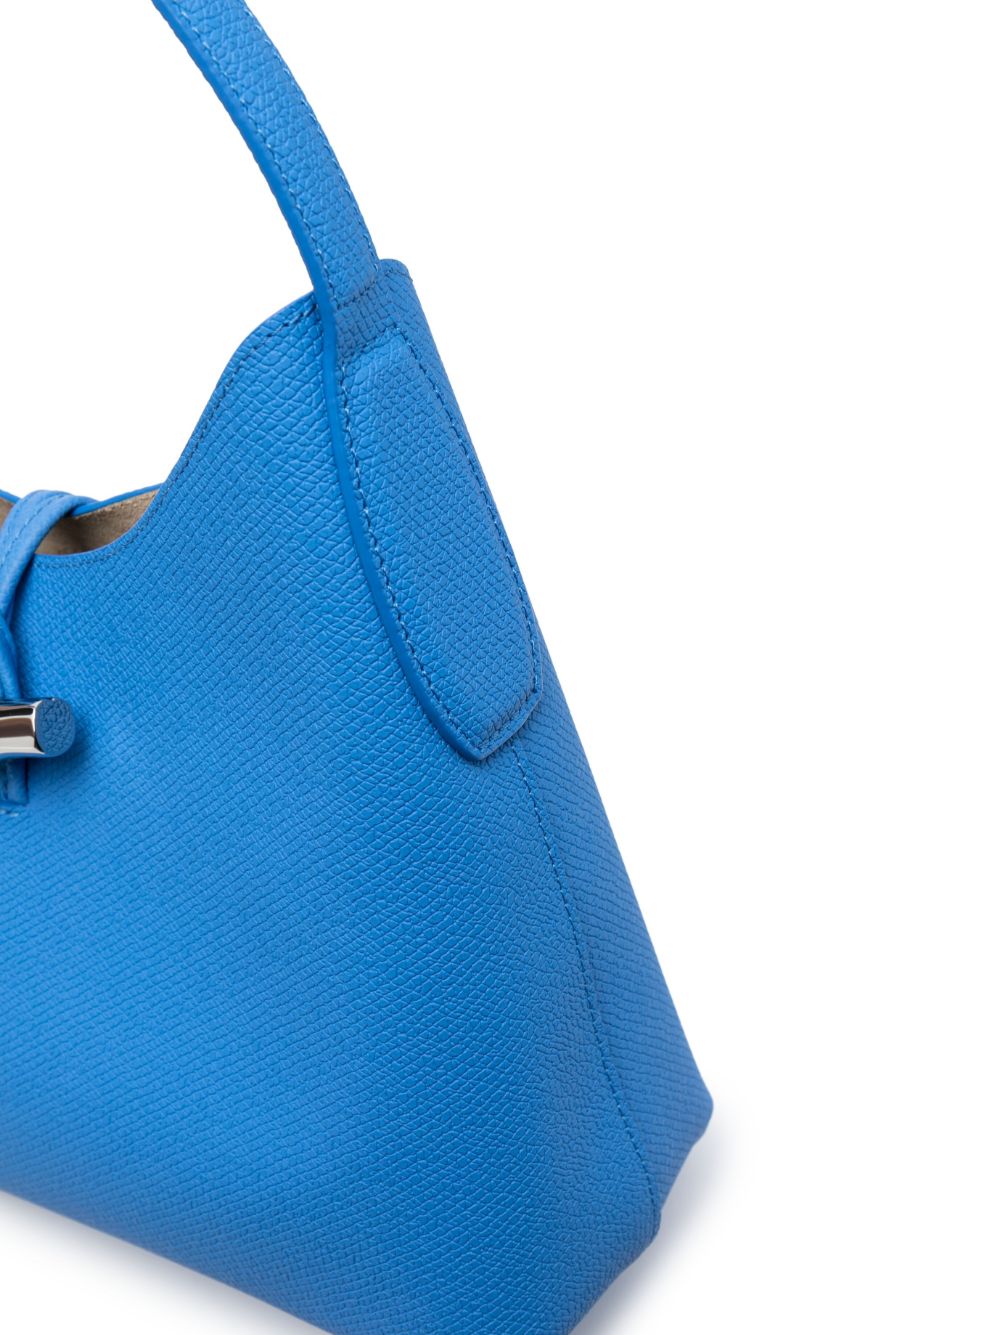 Longchamp Medium Roseau Essential Hobo Bag - Farfetch